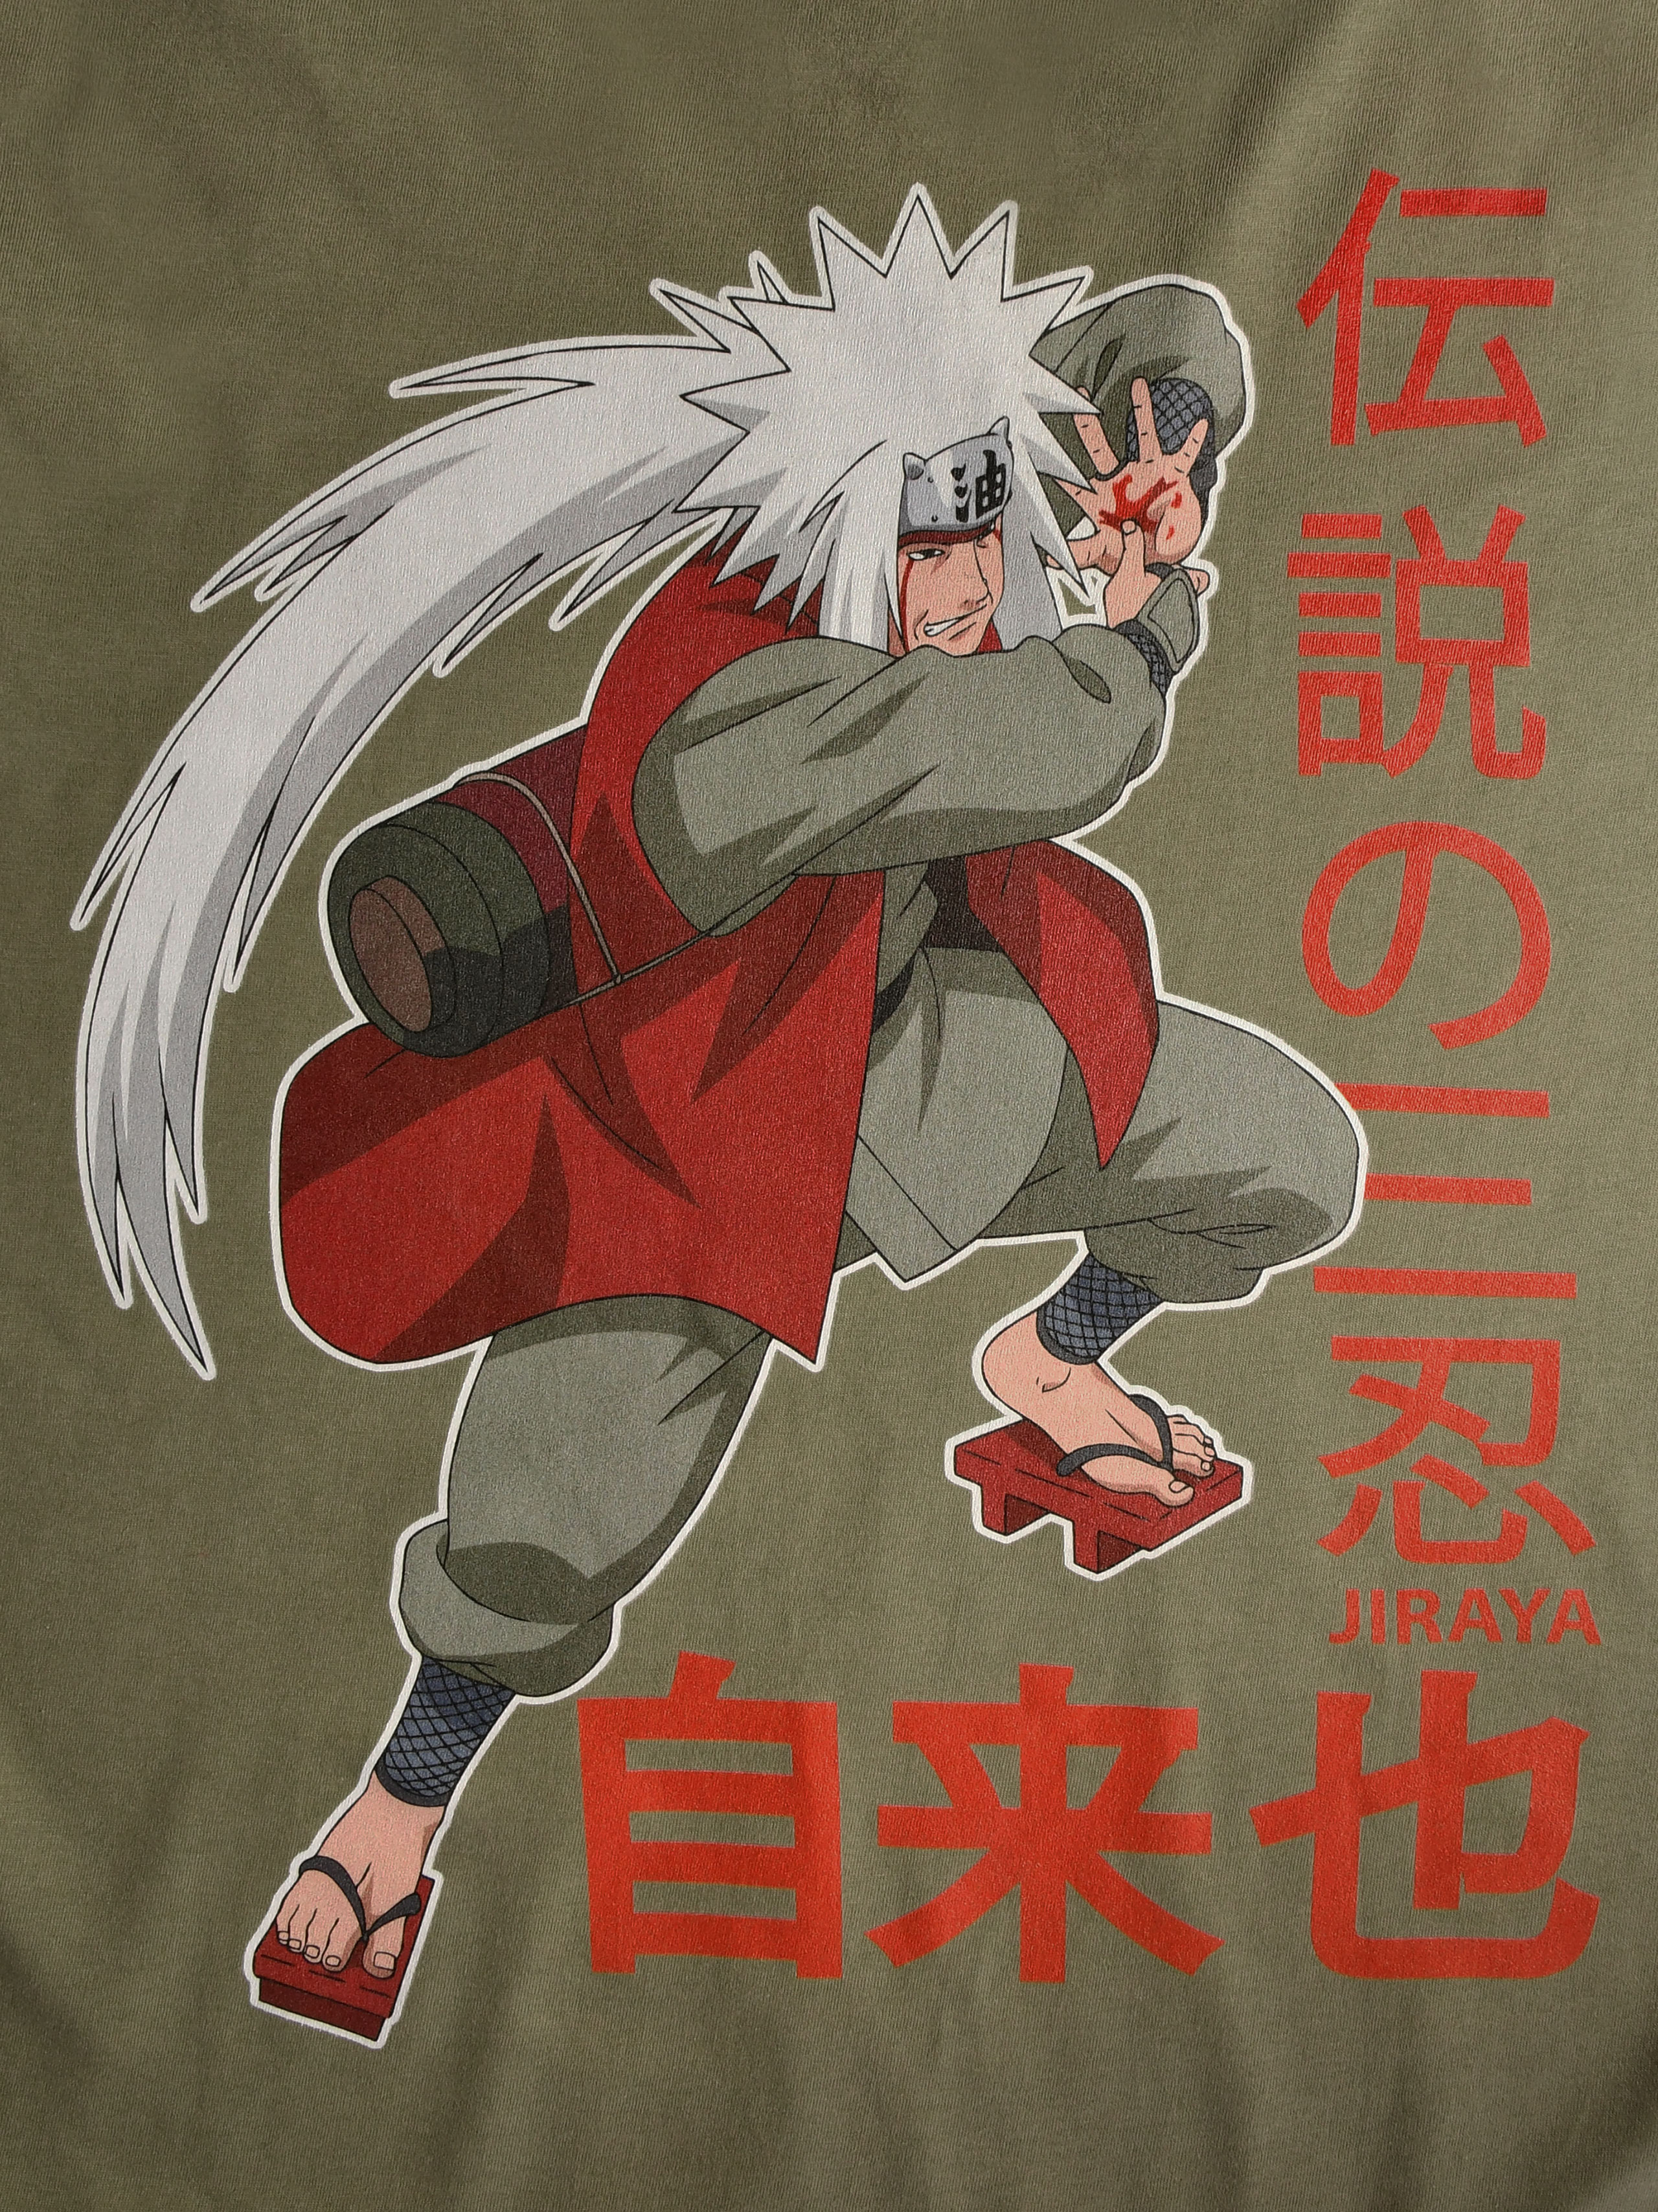 Naruto - Jiraya T-Shirt grün